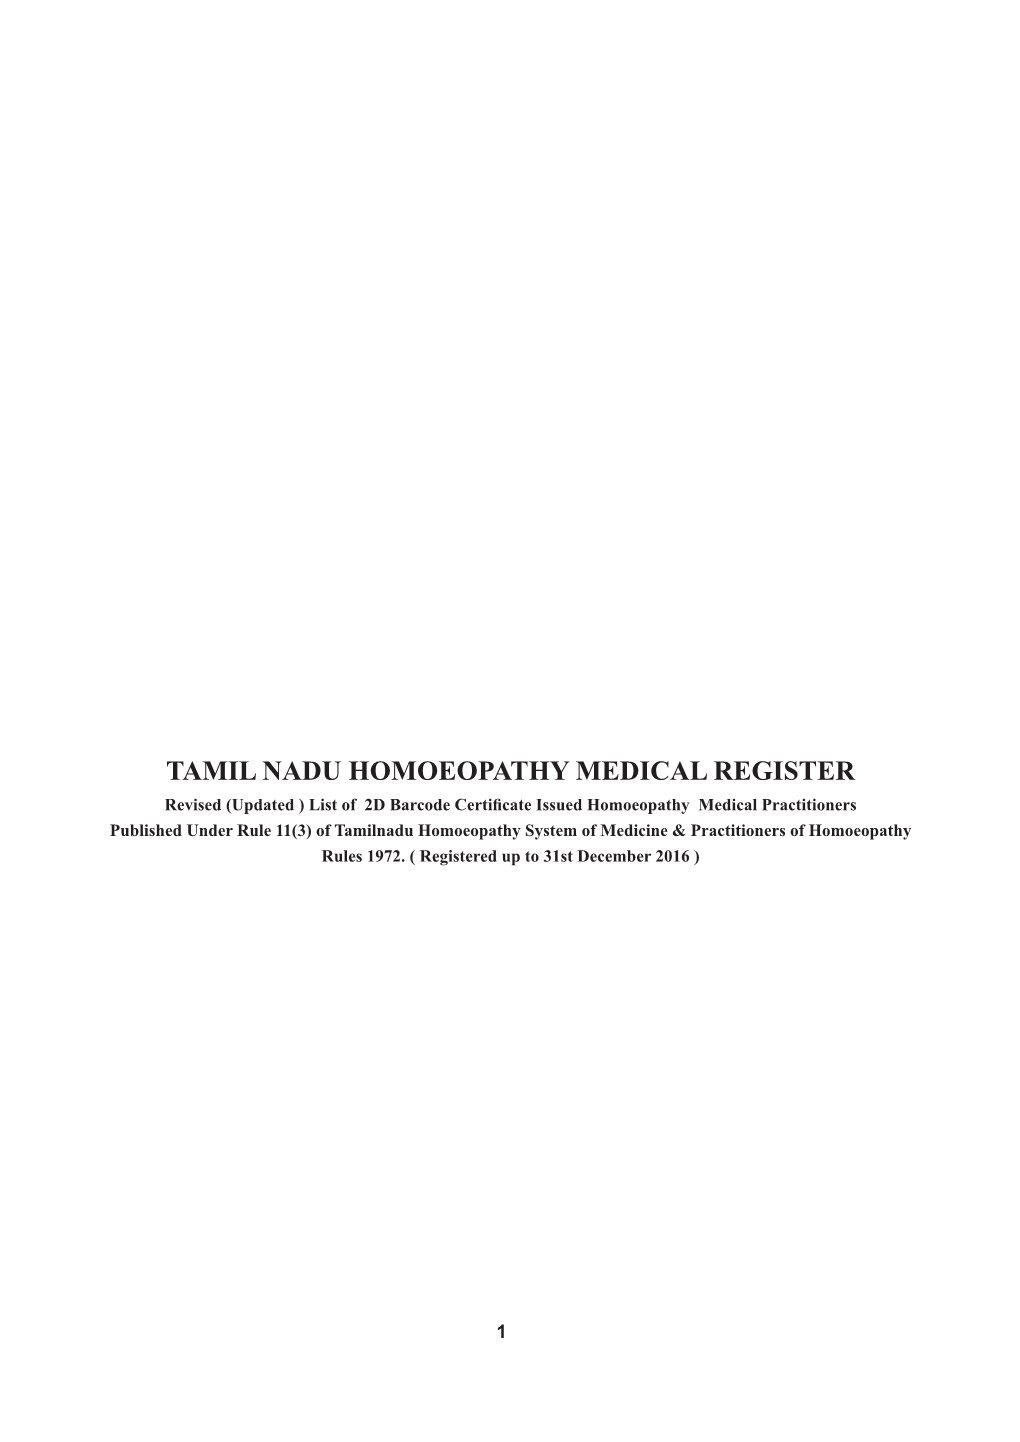 Tamil Nadu Homoeopathy Medical Register